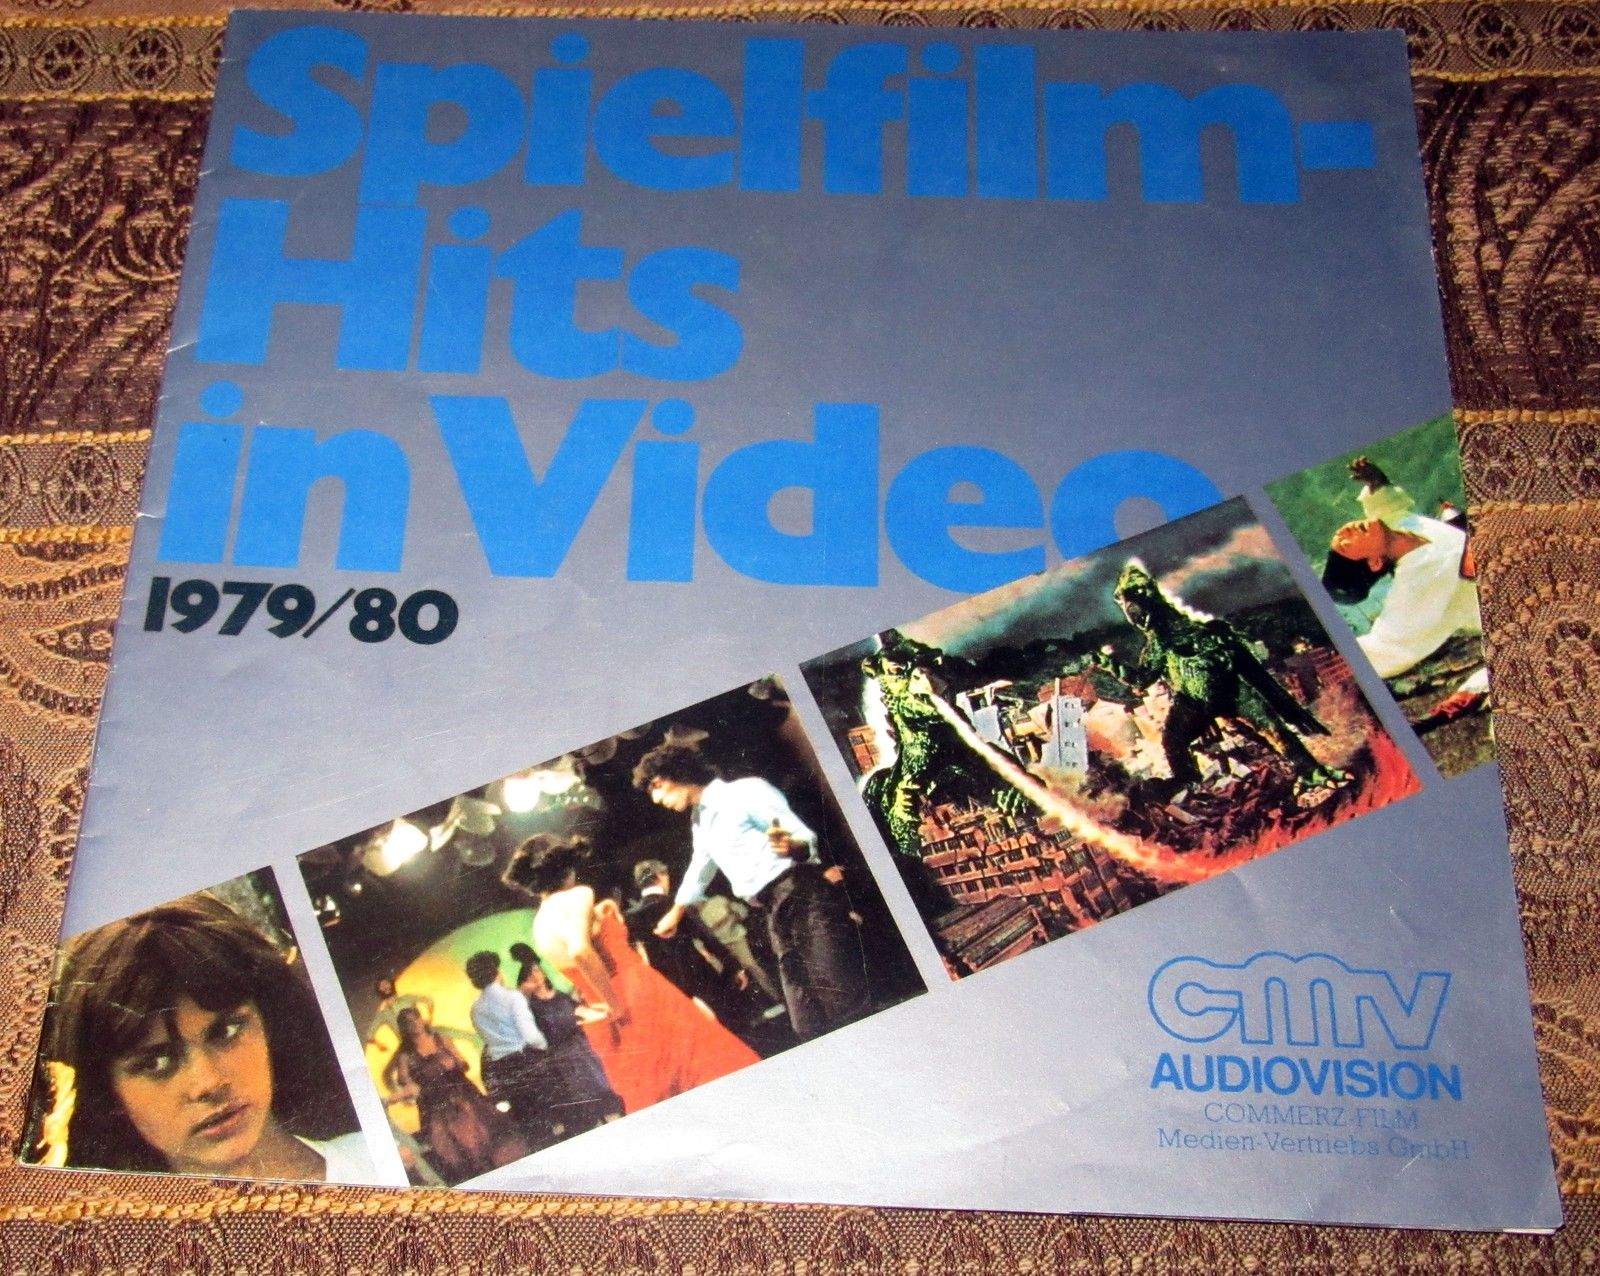 cmv Katalog 1979-80-01.jpg